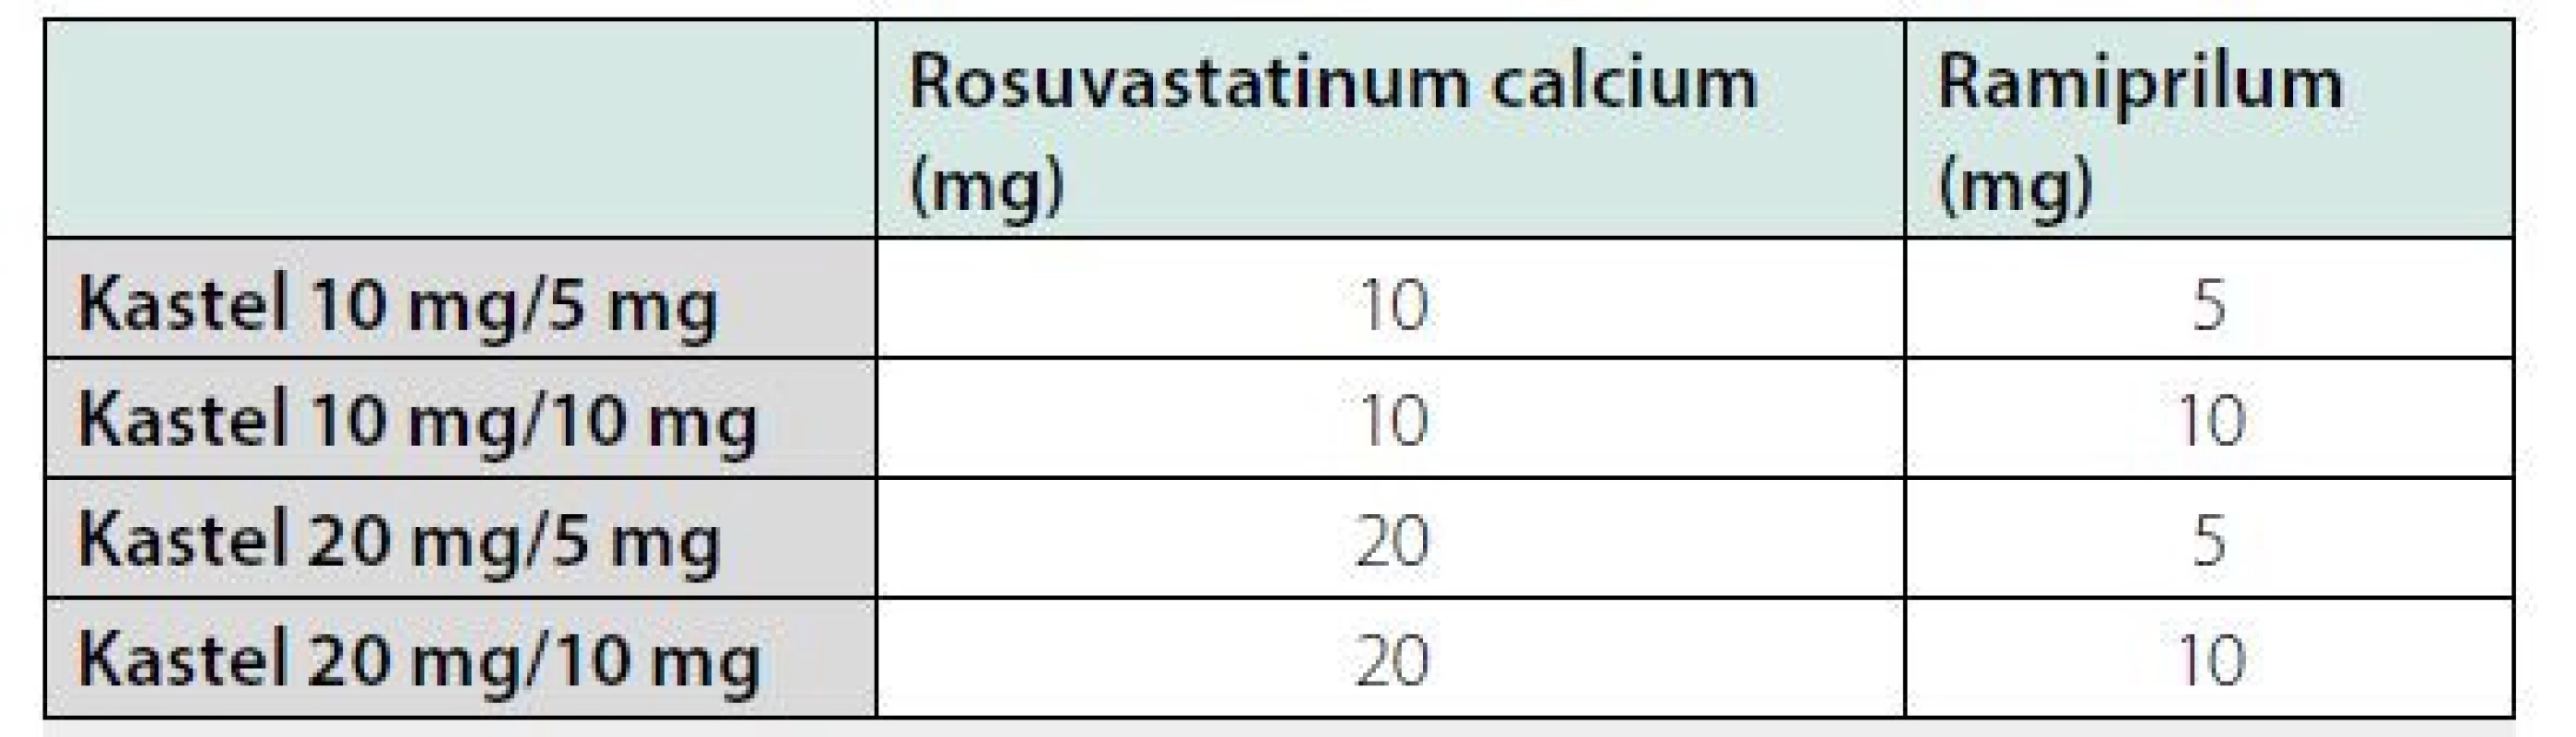 Kvalitativní a kvantitativní složení přípravku Kastel (tvrdá želatinová
tobolka se dvěma tabletami)